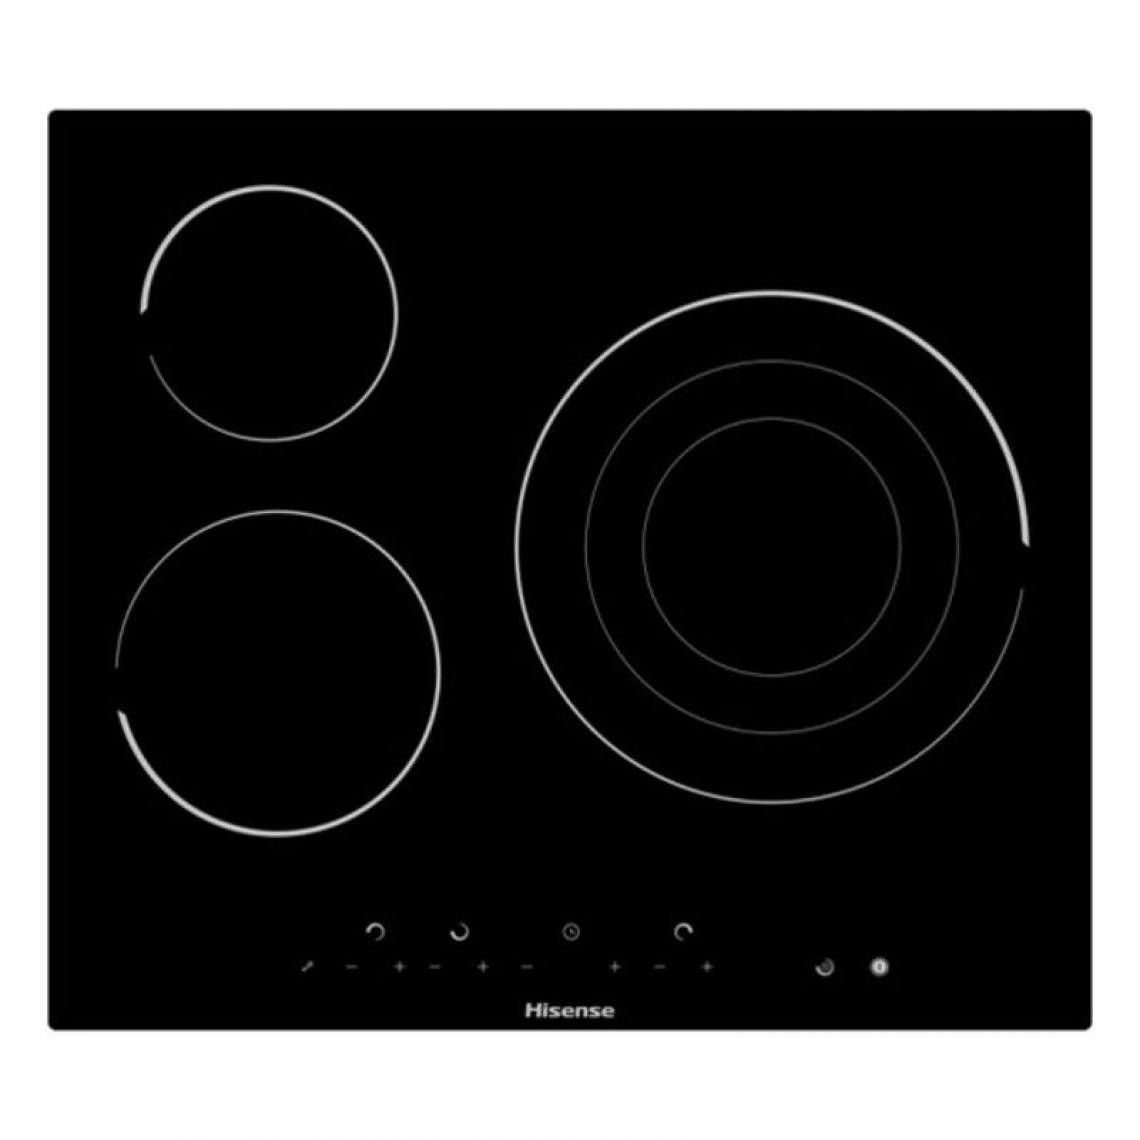 Hisense - Plaques vitro-céramiques Hisense E6322C 60 cm Noir (3 Zones de cuisson) - Table de cuisson